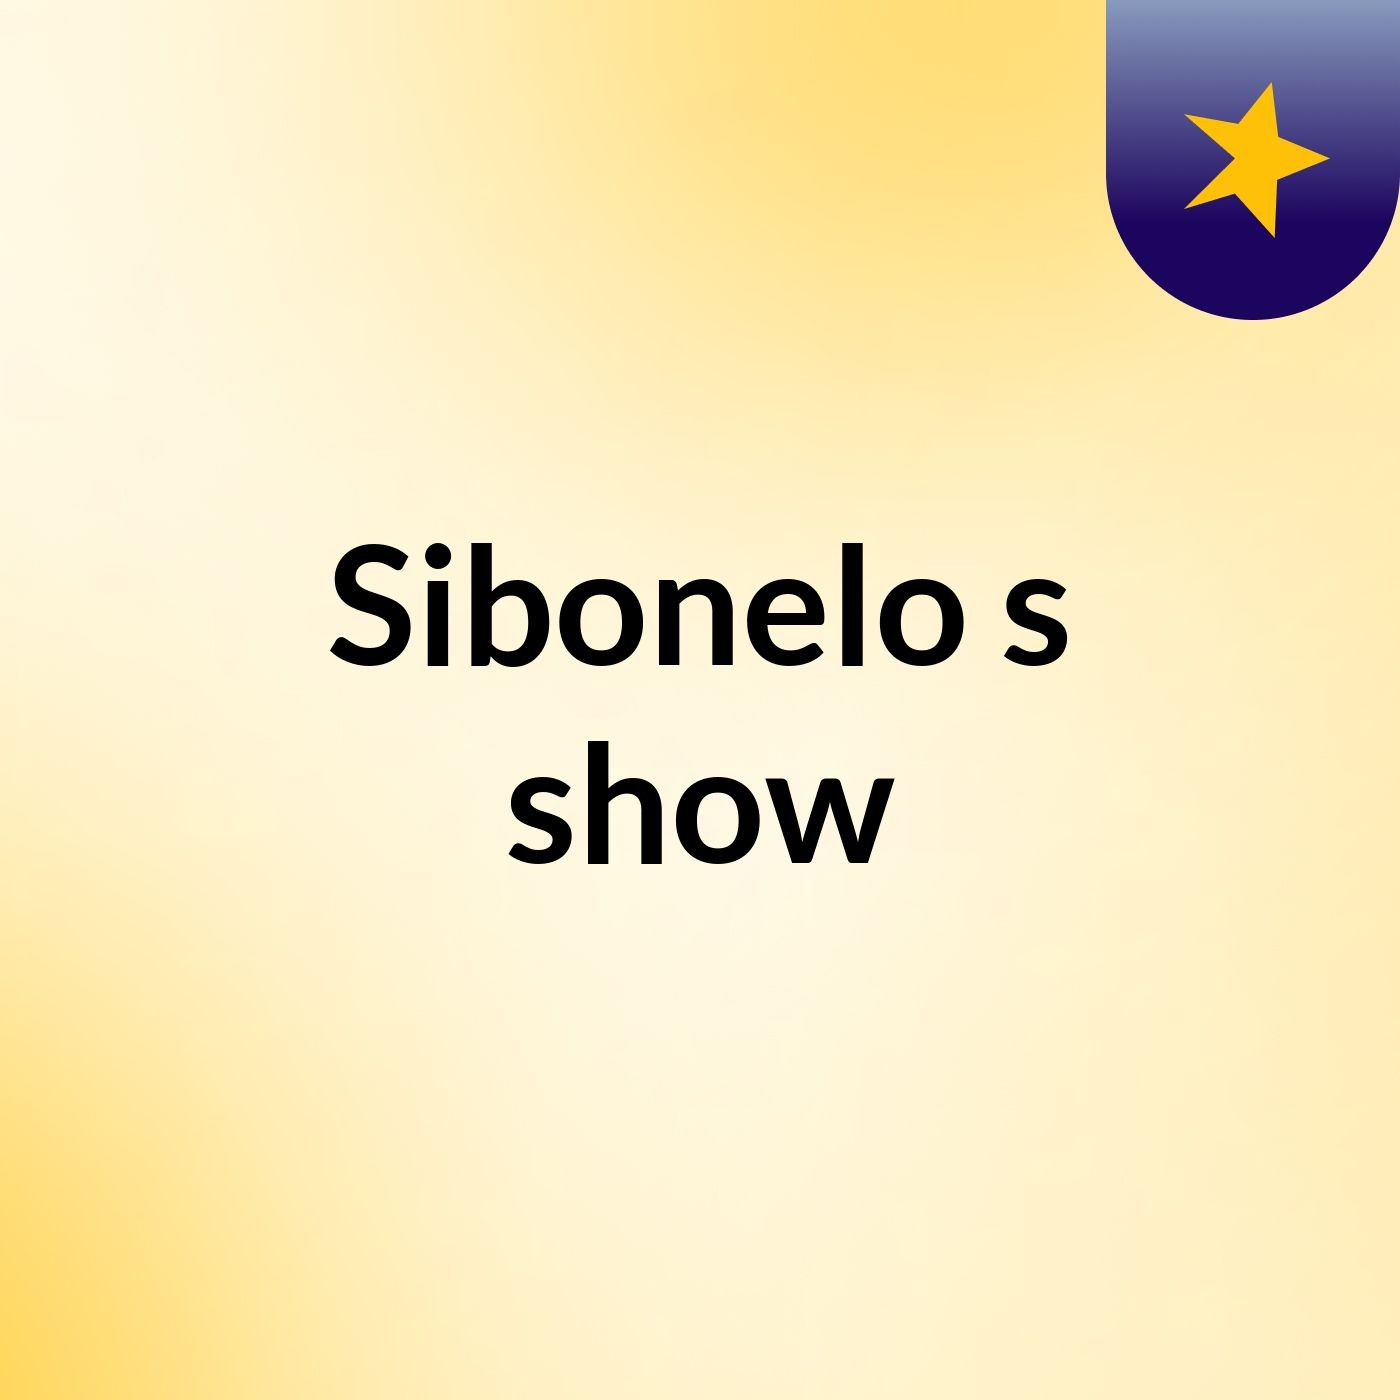 Sibonelo's show